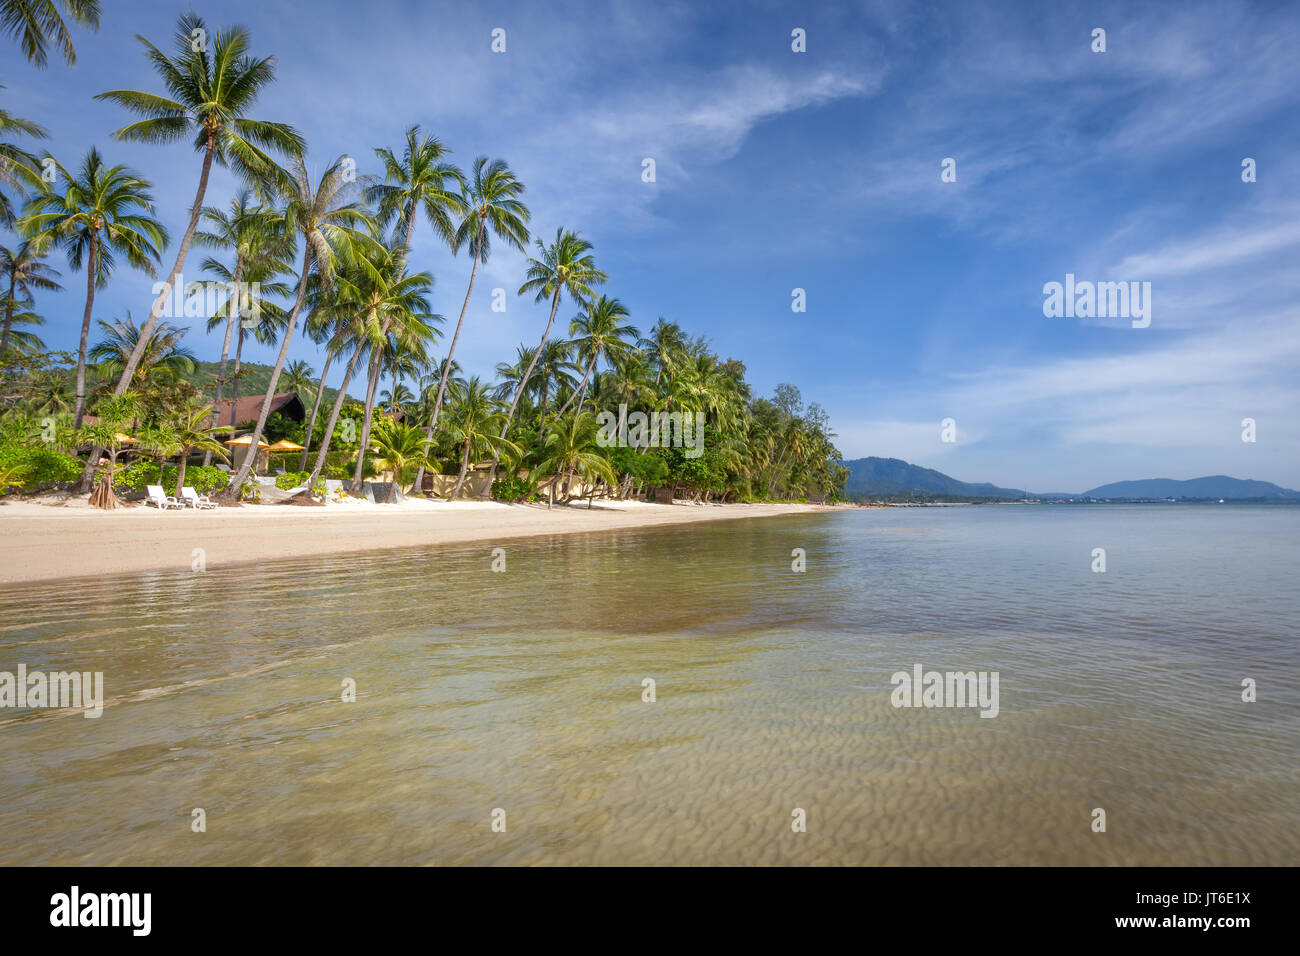 Nathon beach, Laem Yai, Koh Samui, Thailand Stock Photo